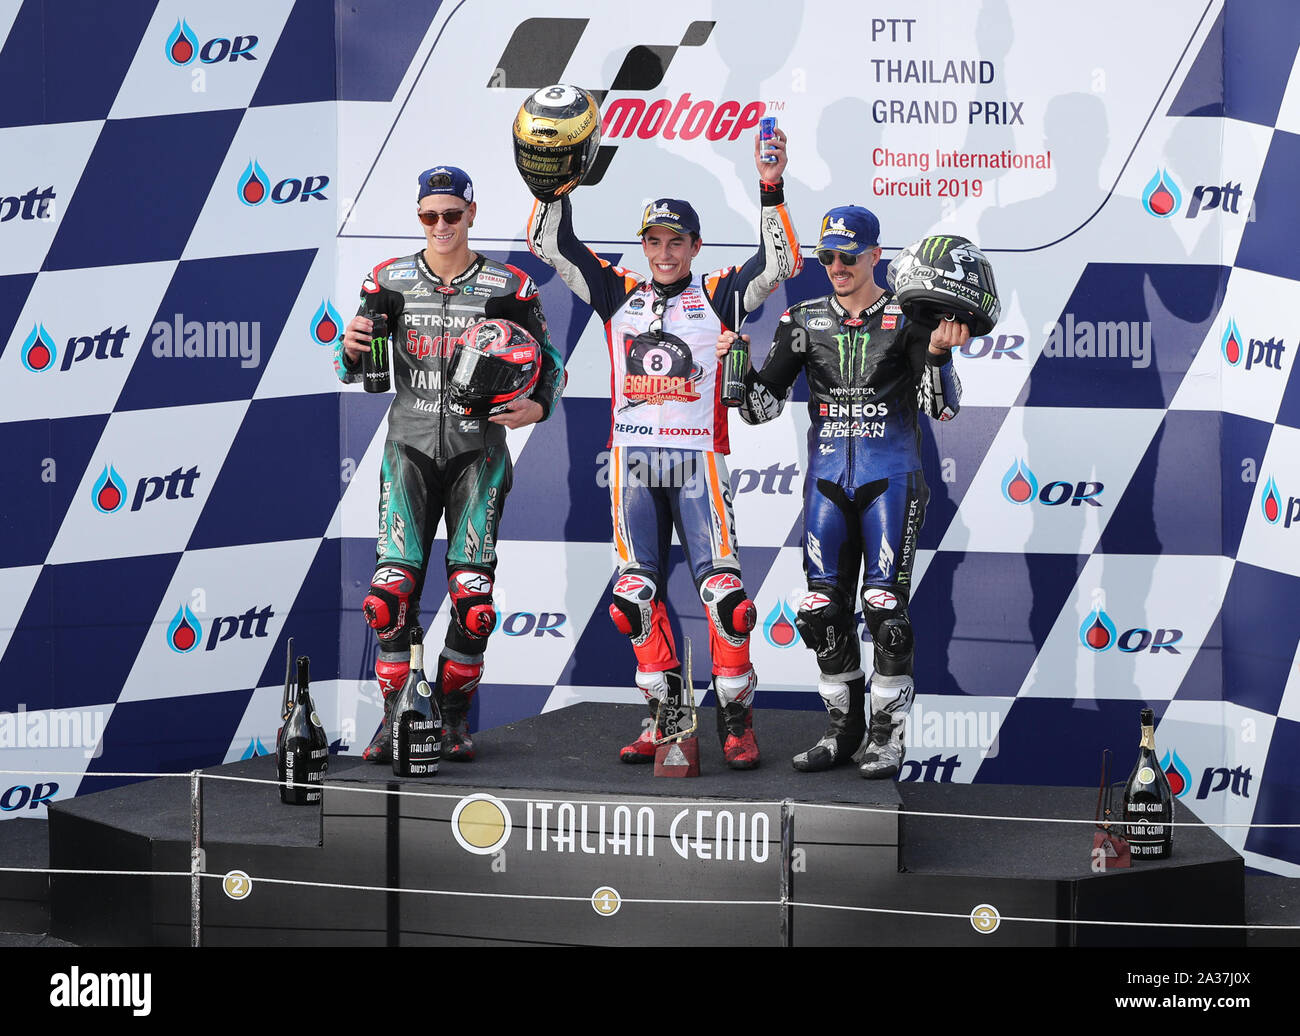 Buriram, Thailand. 6th Oct, 2019. Marc Marquez (C), Fabio Quartararo (L)  and Maverick Vi?ales pose for photos on the podium at the Thai Grand Prix  of MotoGP in Buriram, Thailand, Oct. 6,